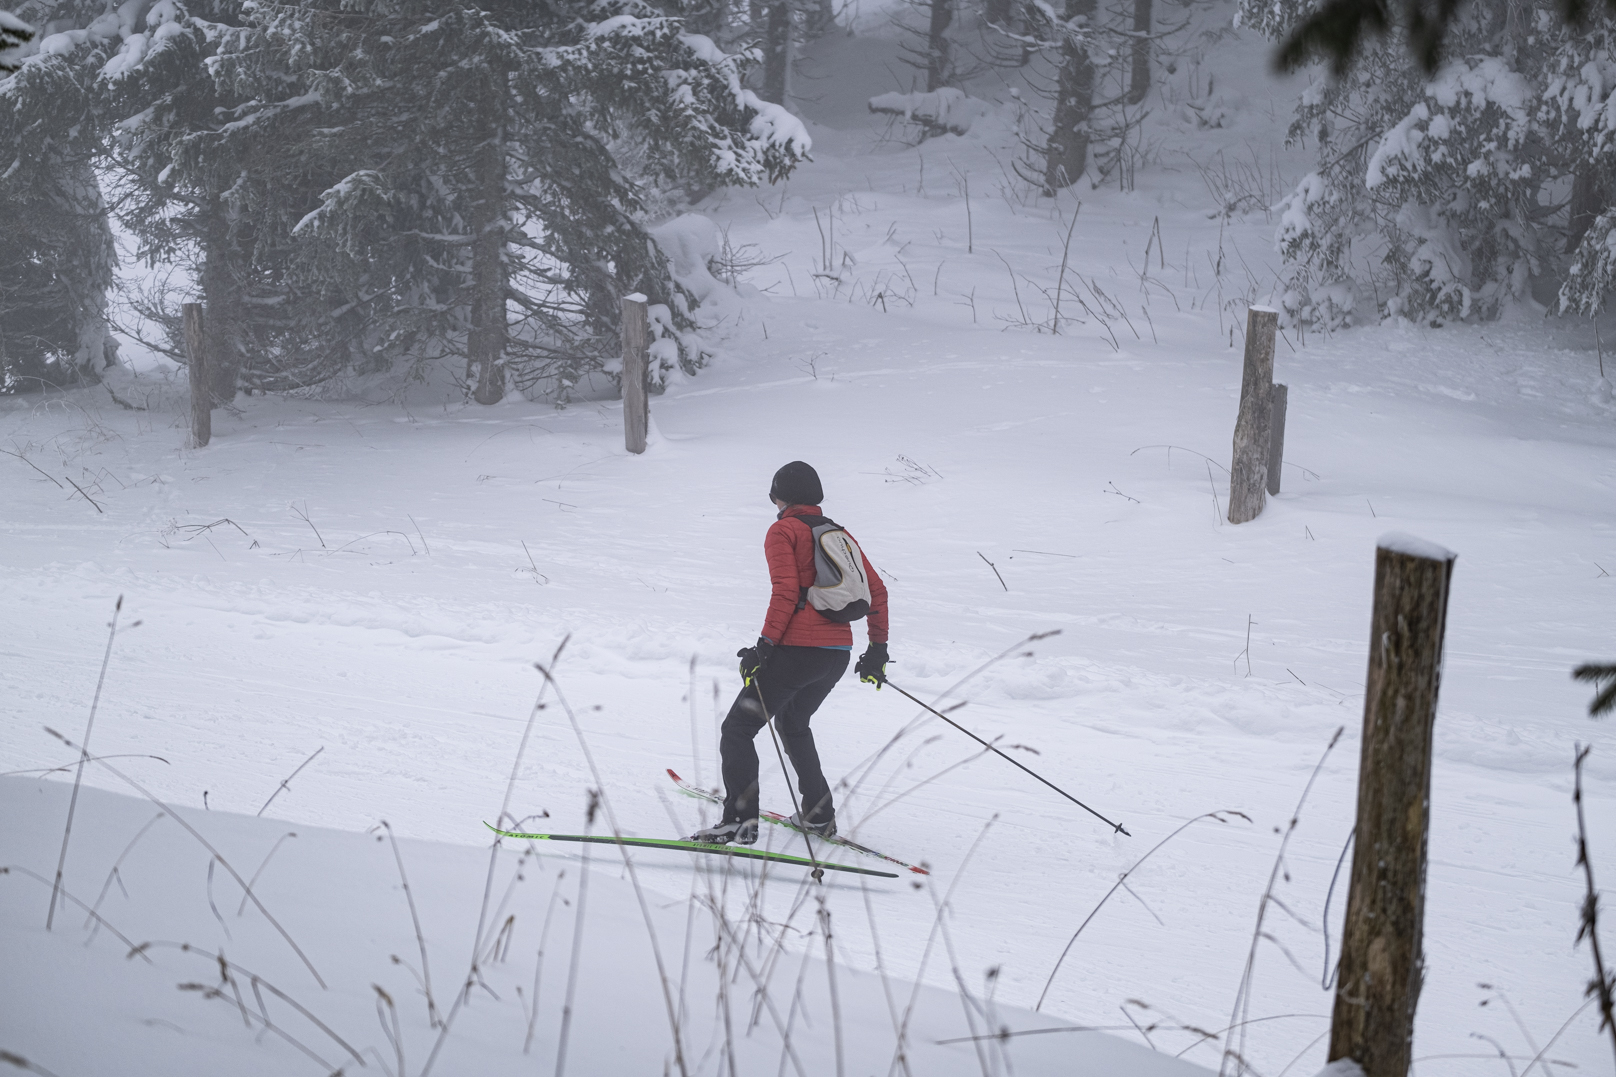 Les amateurs de ski de fond soufflent le chaud et le froid